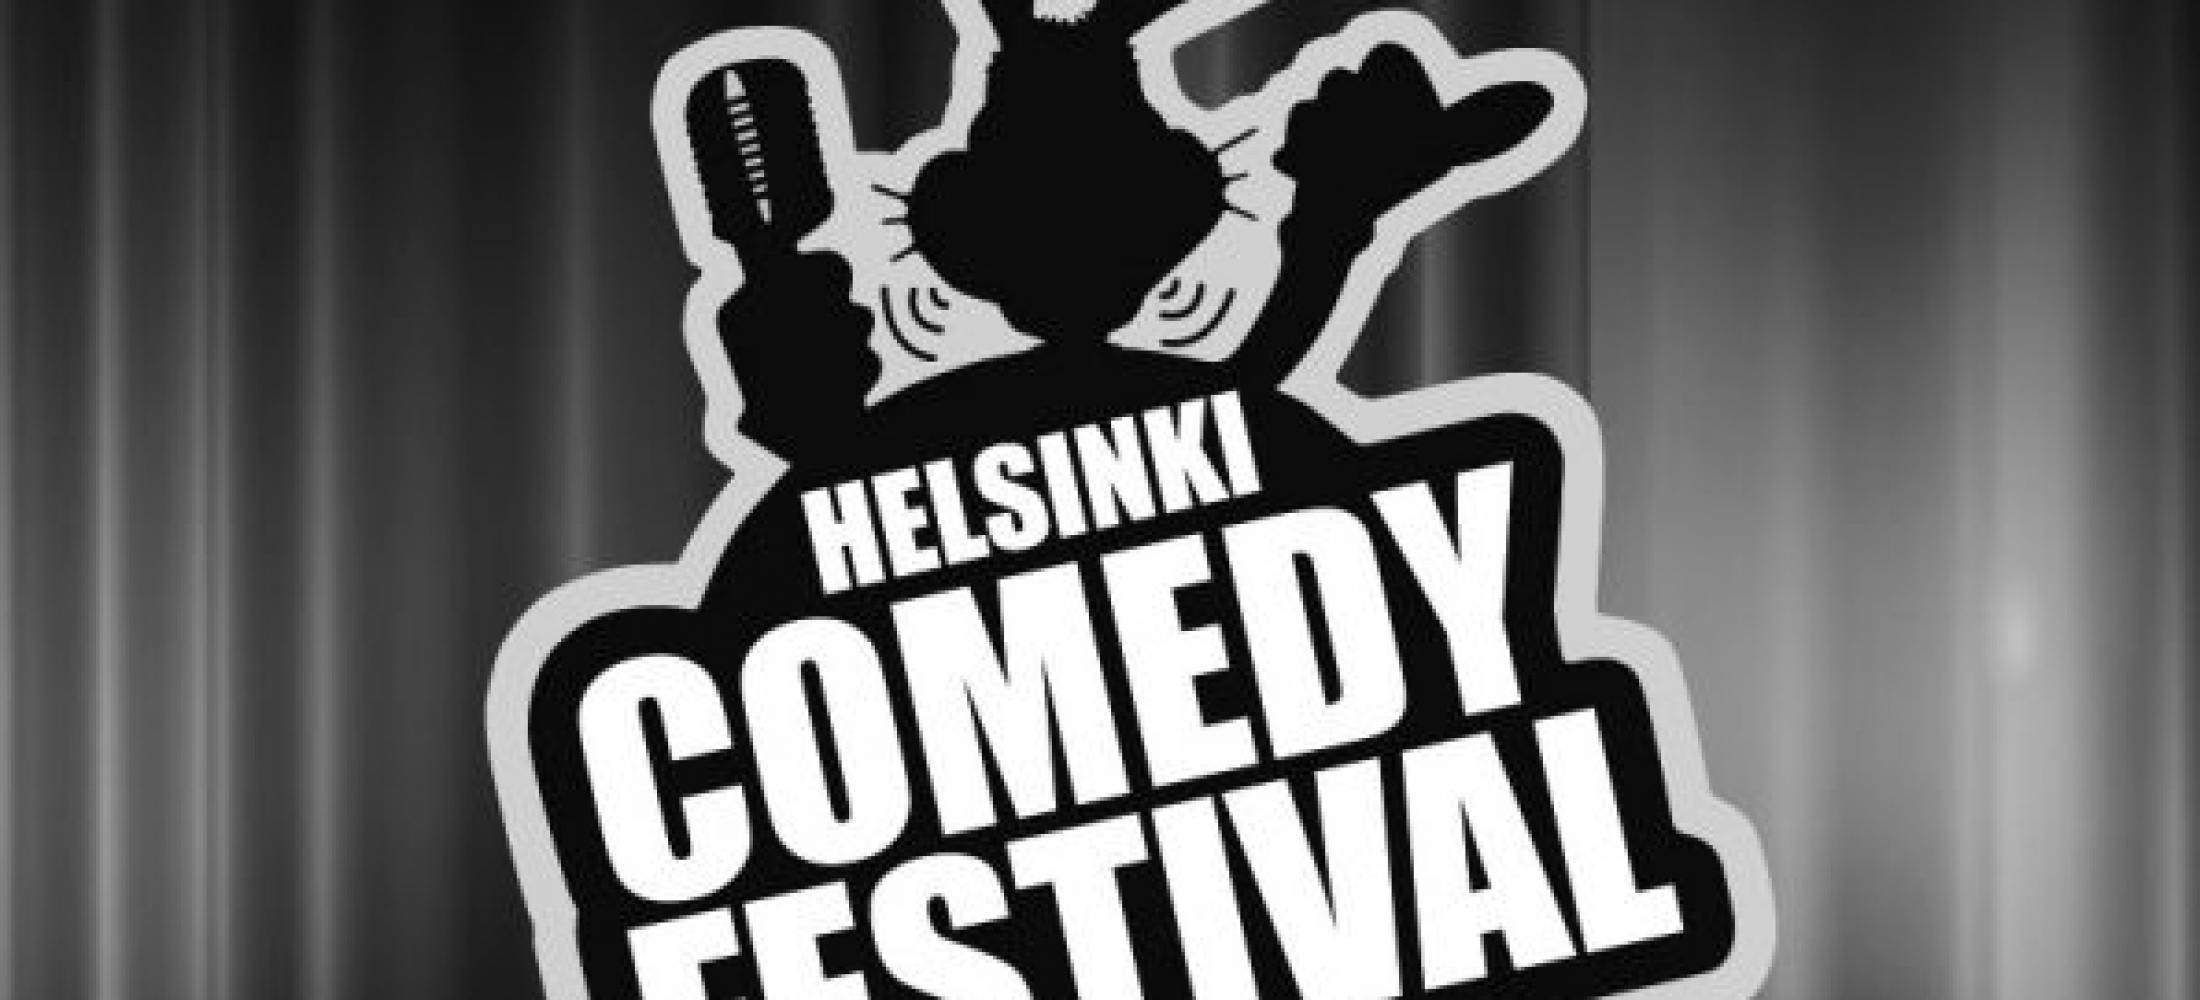 Helsinki Comedy Festival - Meebu